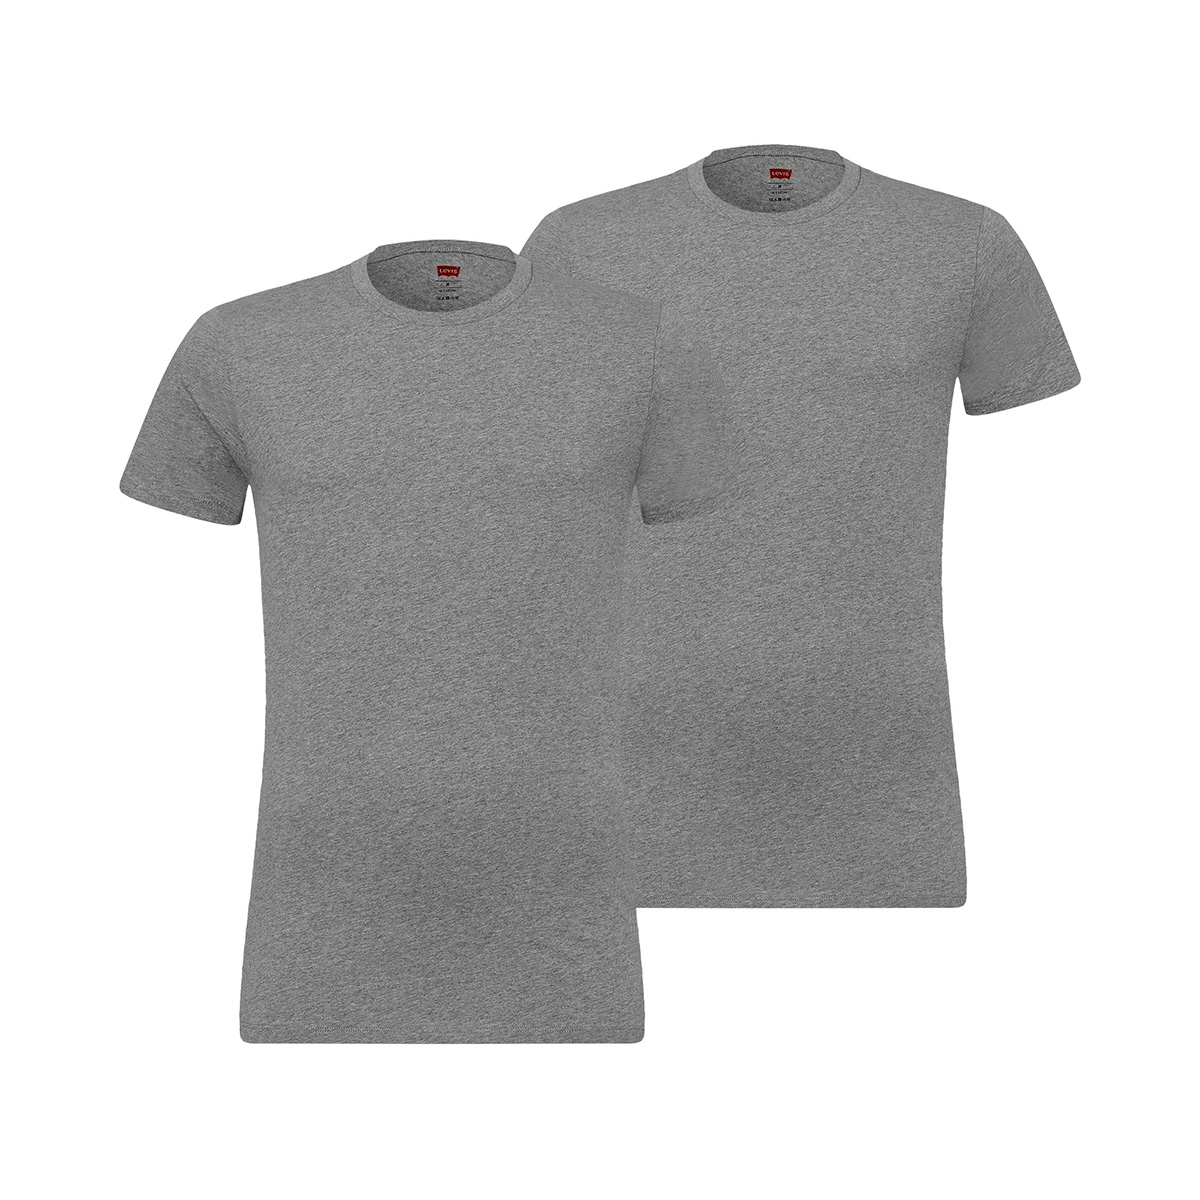 Levi's Herren Levis Men SOLID Crew 2P T-Shirt, Grau (Middle Grey Melange 758), Large (Herstellergröße: 030) (2er Pack)